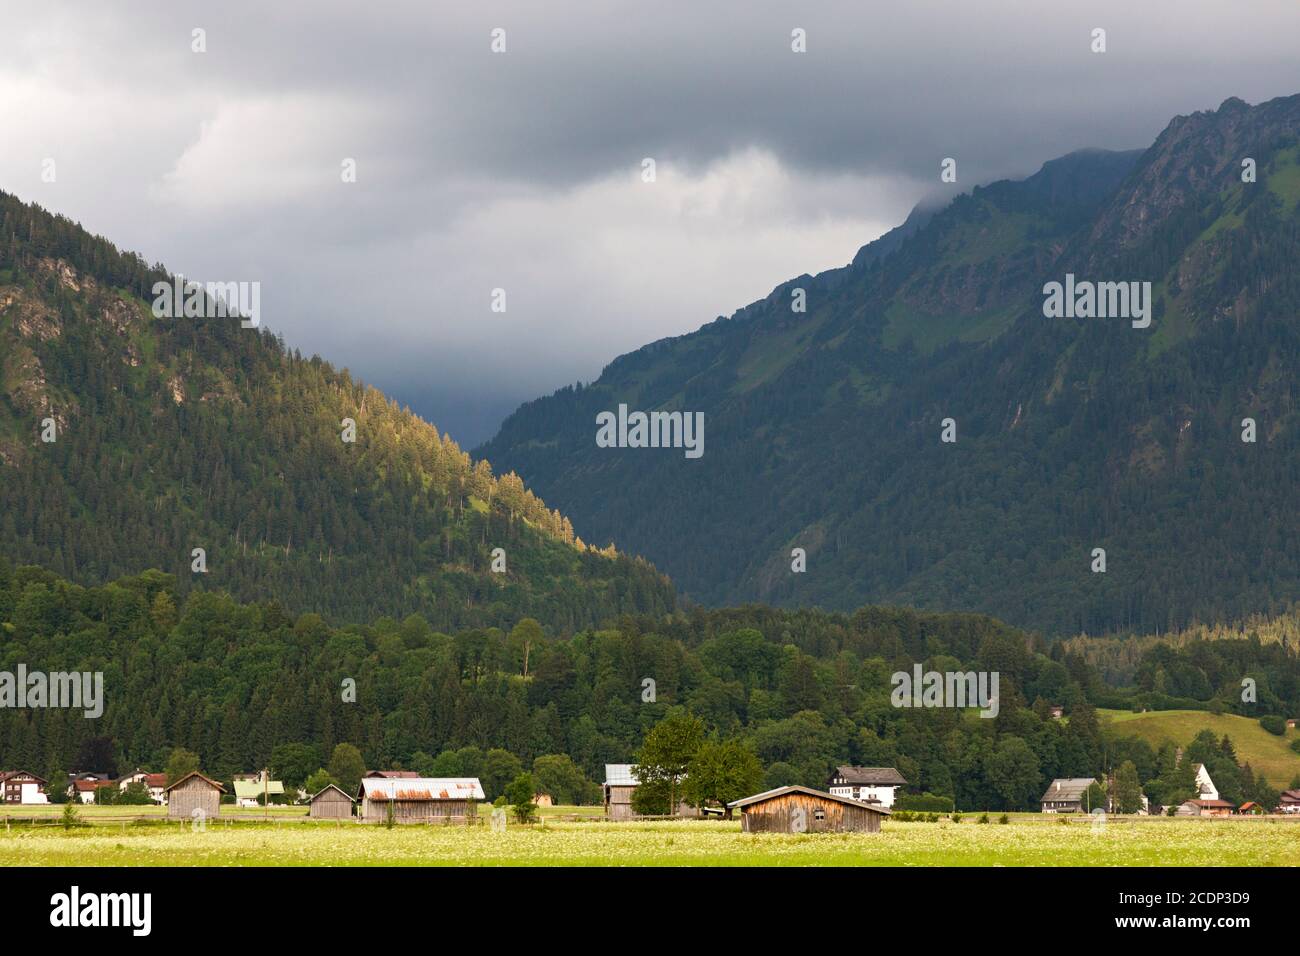 Scheune, Häuser, bewaldete Berge, tiefliegende Wolken Stock Photo